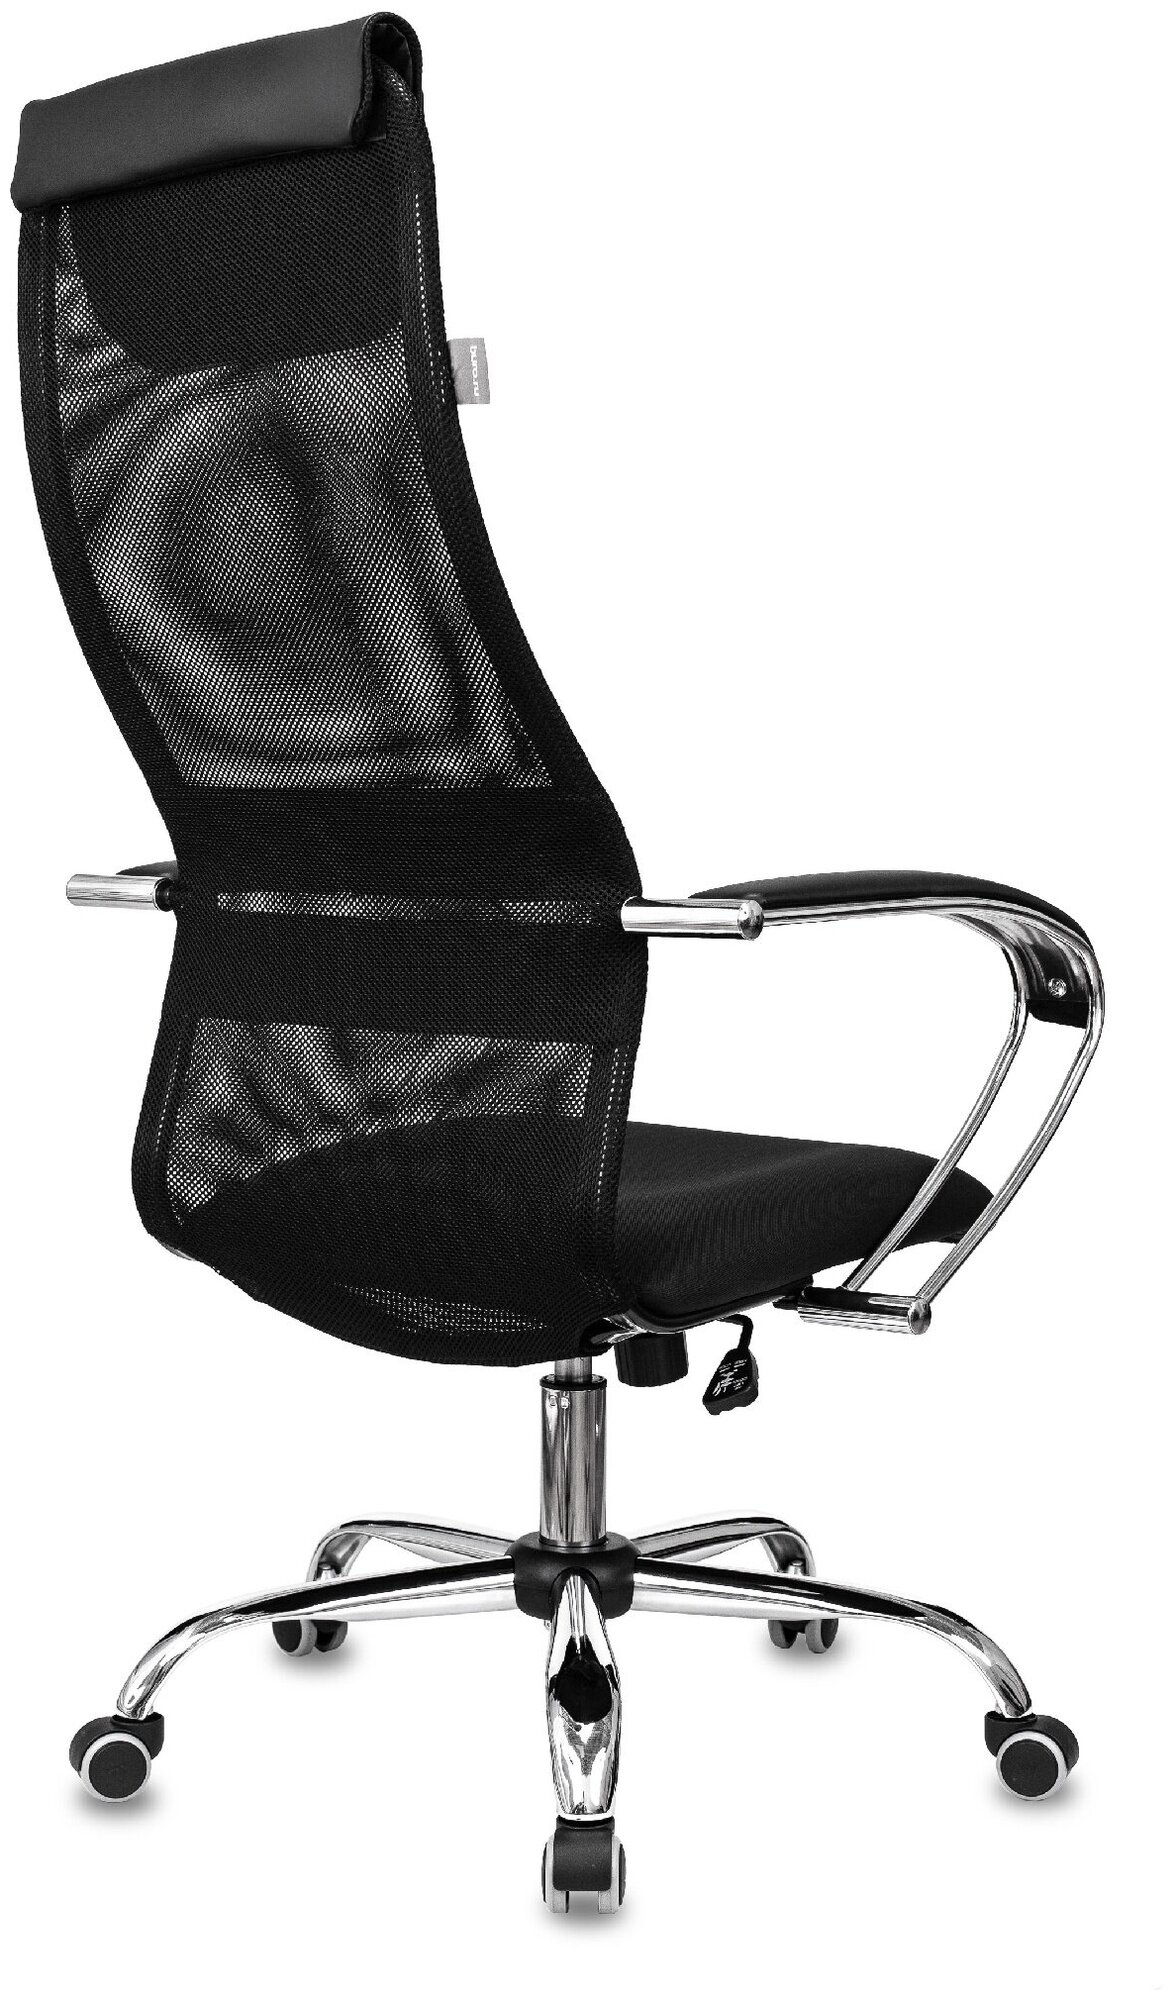 Кресло руководителя CH-607SL черный TW-01 Neo Black сетка/ткань с подголов. крестов. металл / Компьютерное кресло для директора, начальника, менеджера